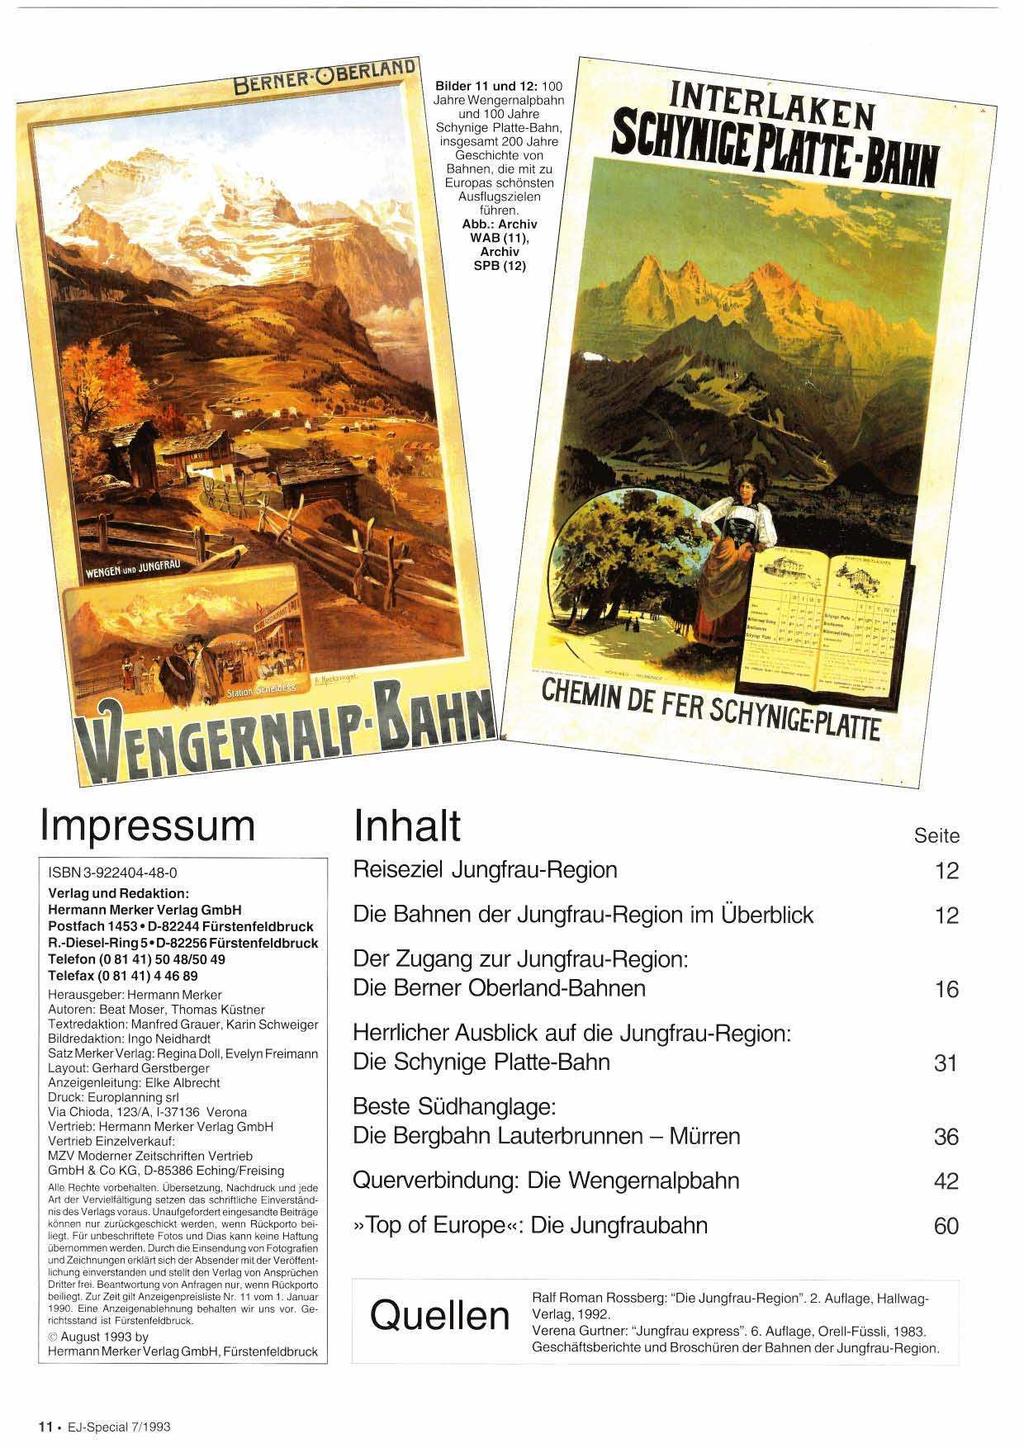 Impressum ISBN 3-922404-48-0 Verlag und Redaktion: Hermann Merker Verlag GmbH Postiach 1453 D-82244 Fürstenfeldbruck R.